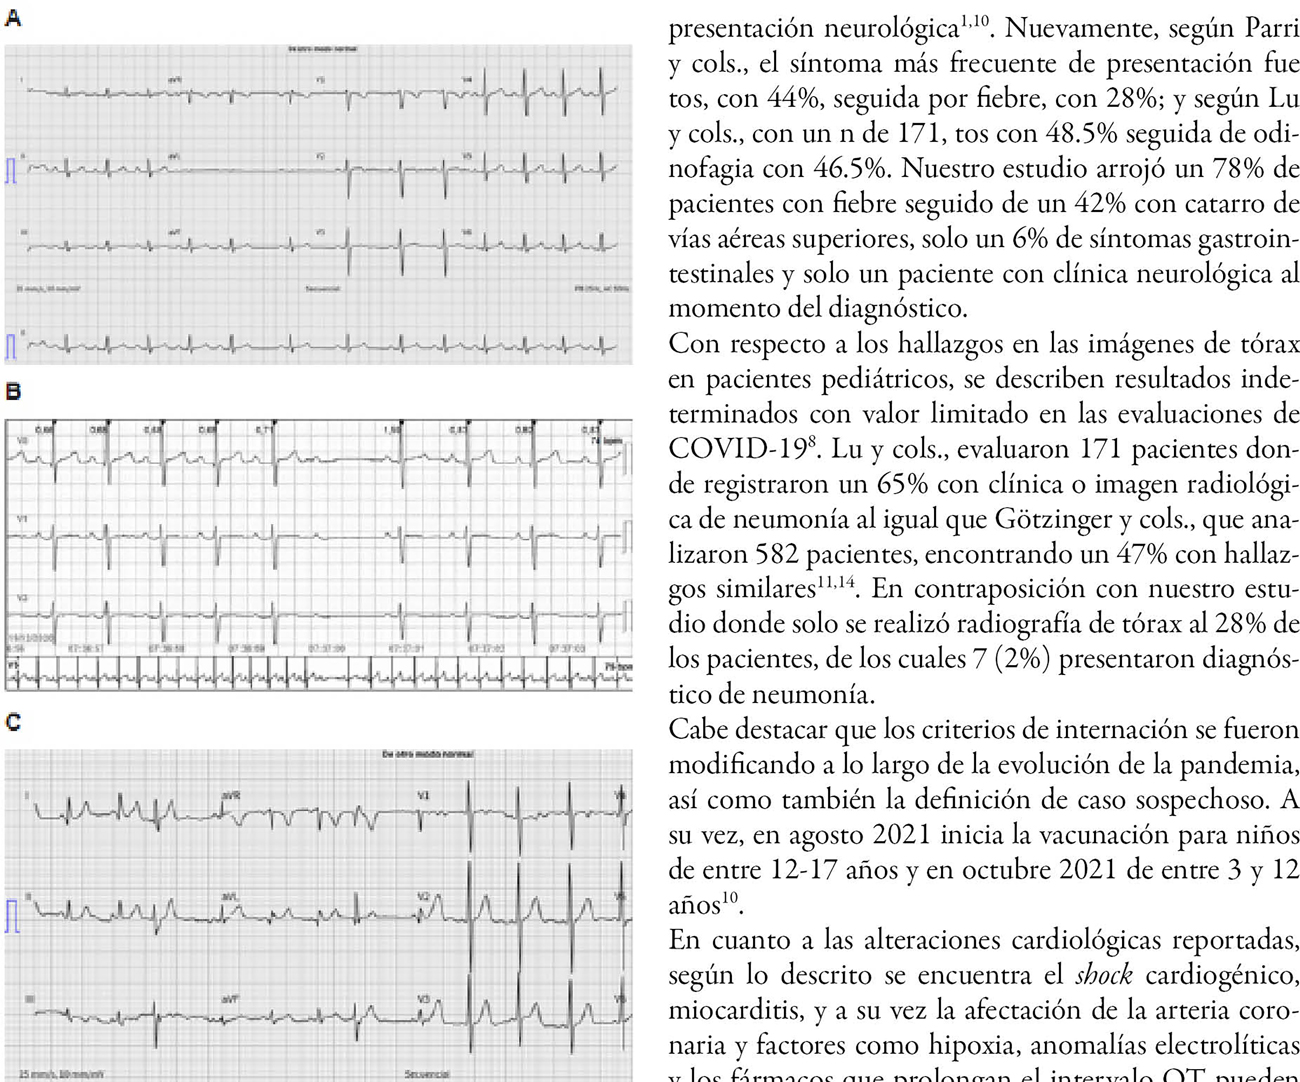 Estudio retrospectivo para describir las características clínicas de los pacientes pediátricos con infección por SARS-CoV-2 atendidos en el Hospital Británico de Buenos Aires y la eventual afección cardiológica asociada